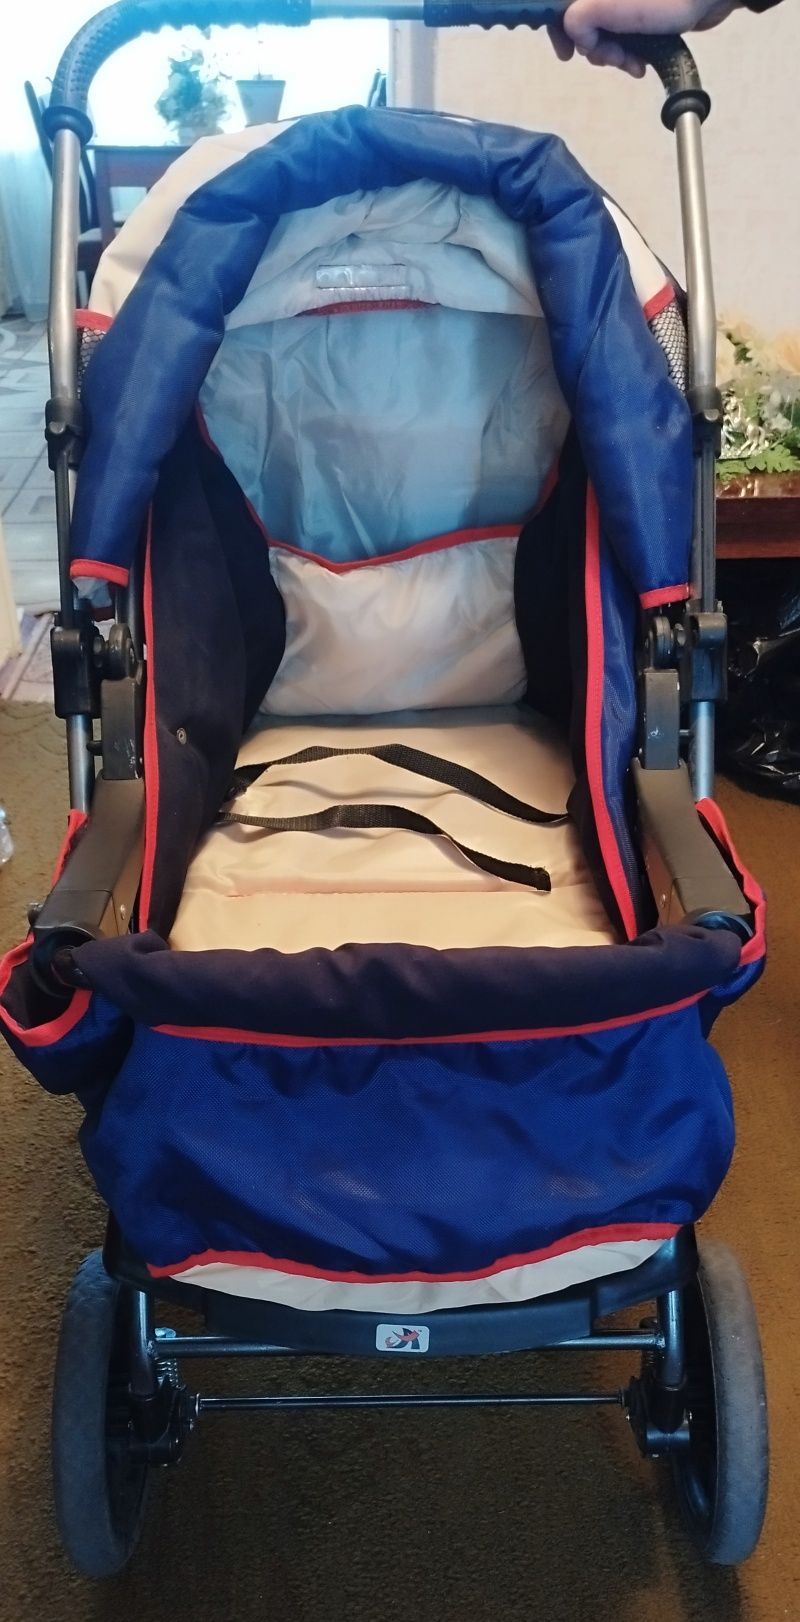 Дитяча коляска-трансформер синьо-червоного кольору